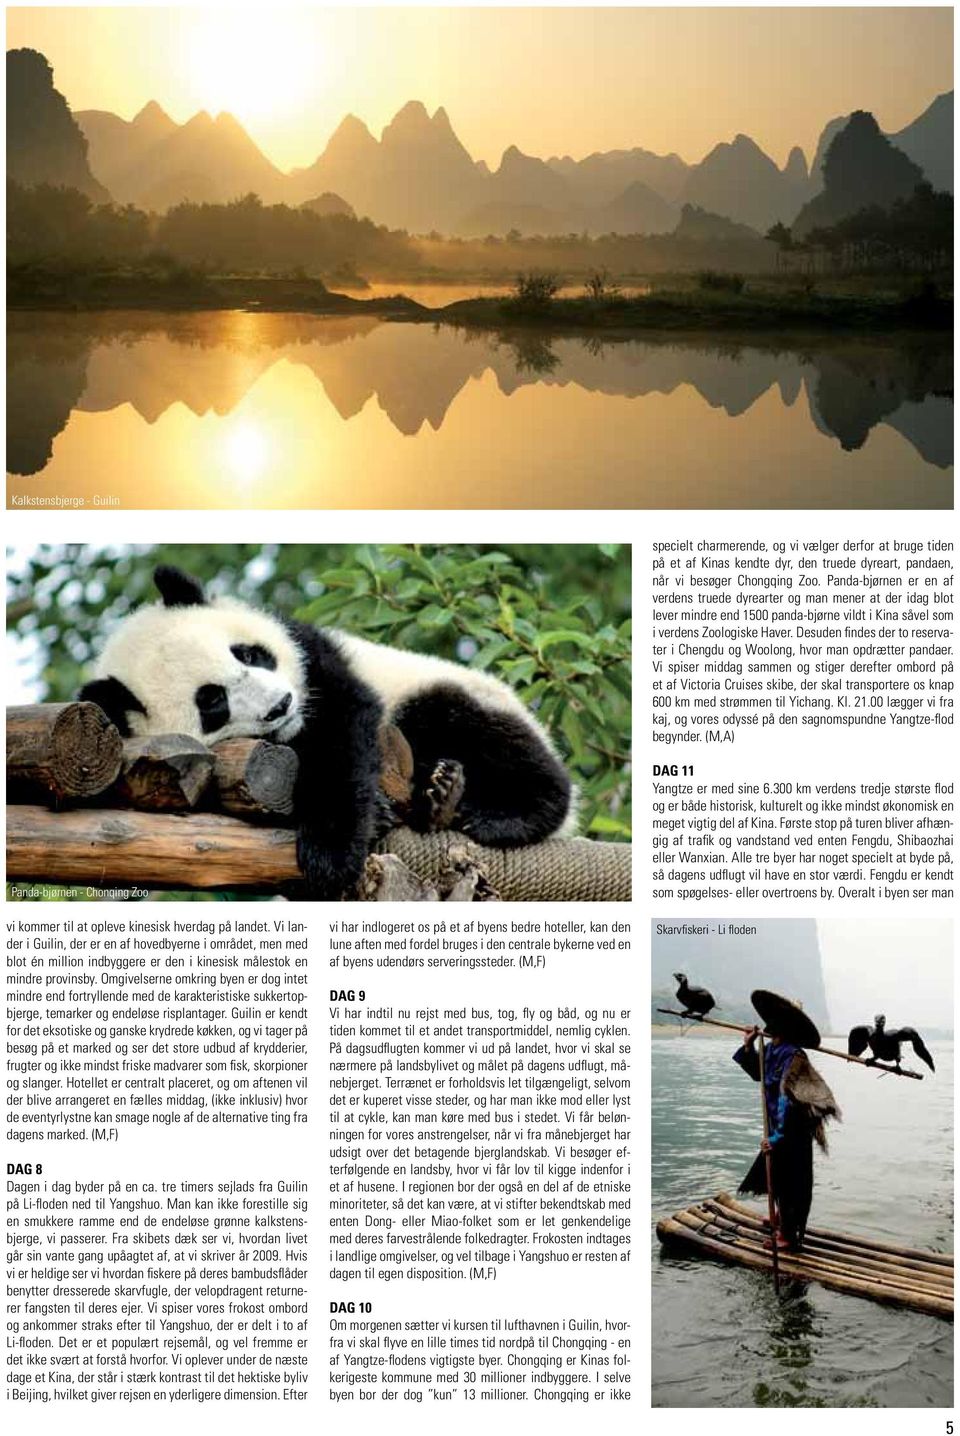 Desuden findes der to reservater i Chengdu og Woolong, hvor man opdrætter pandaer.